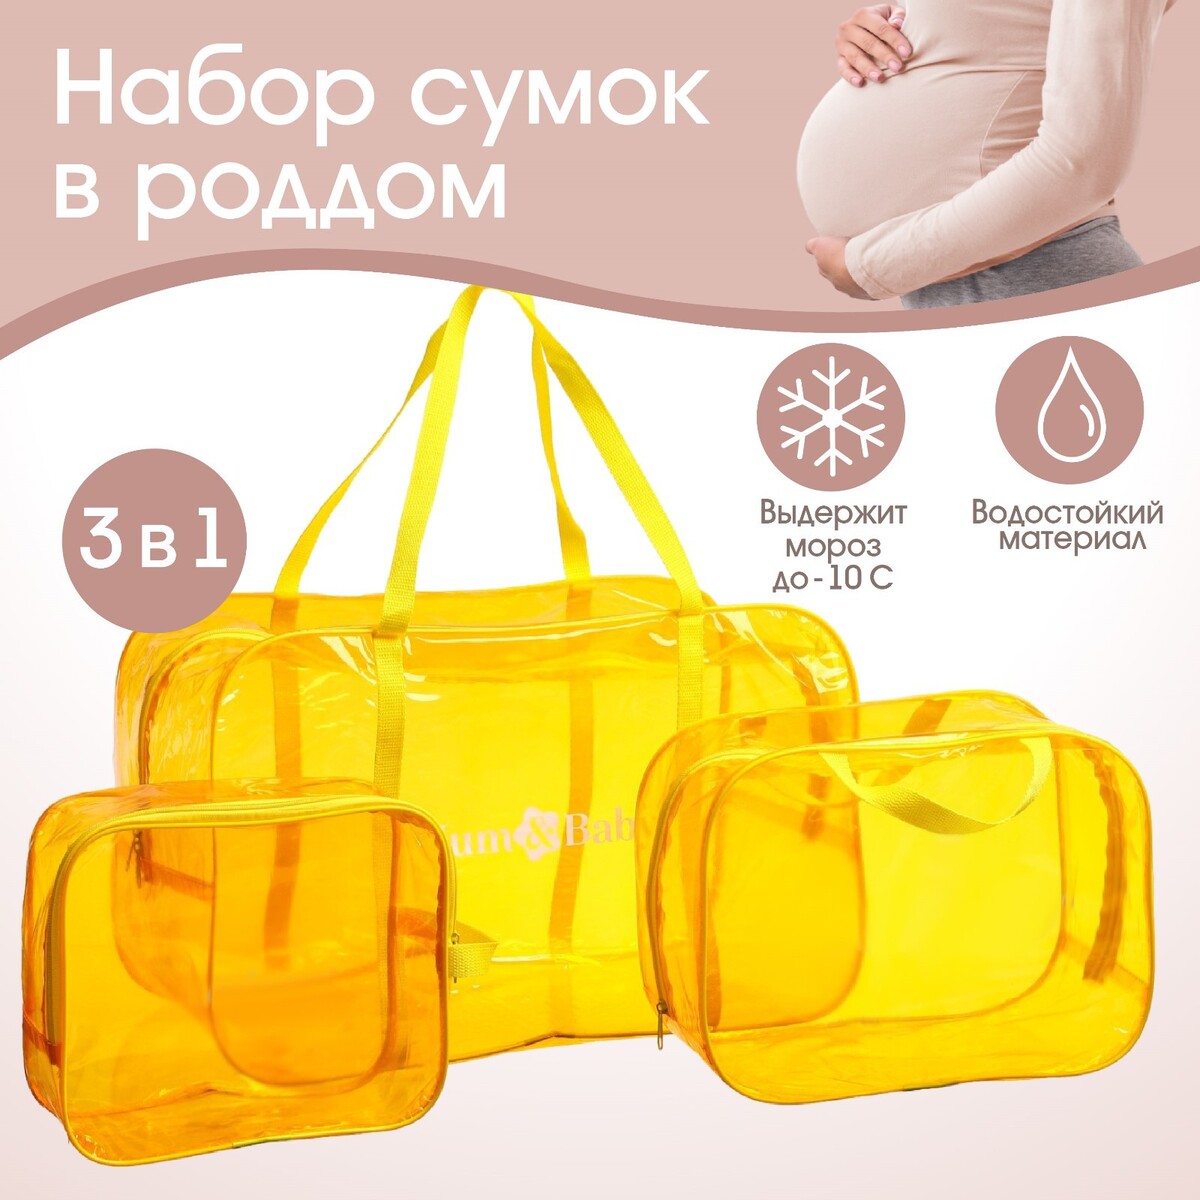 Набор сумок в роддом, 3 шт., цветной пвх, цвет желтый Mum&Baby